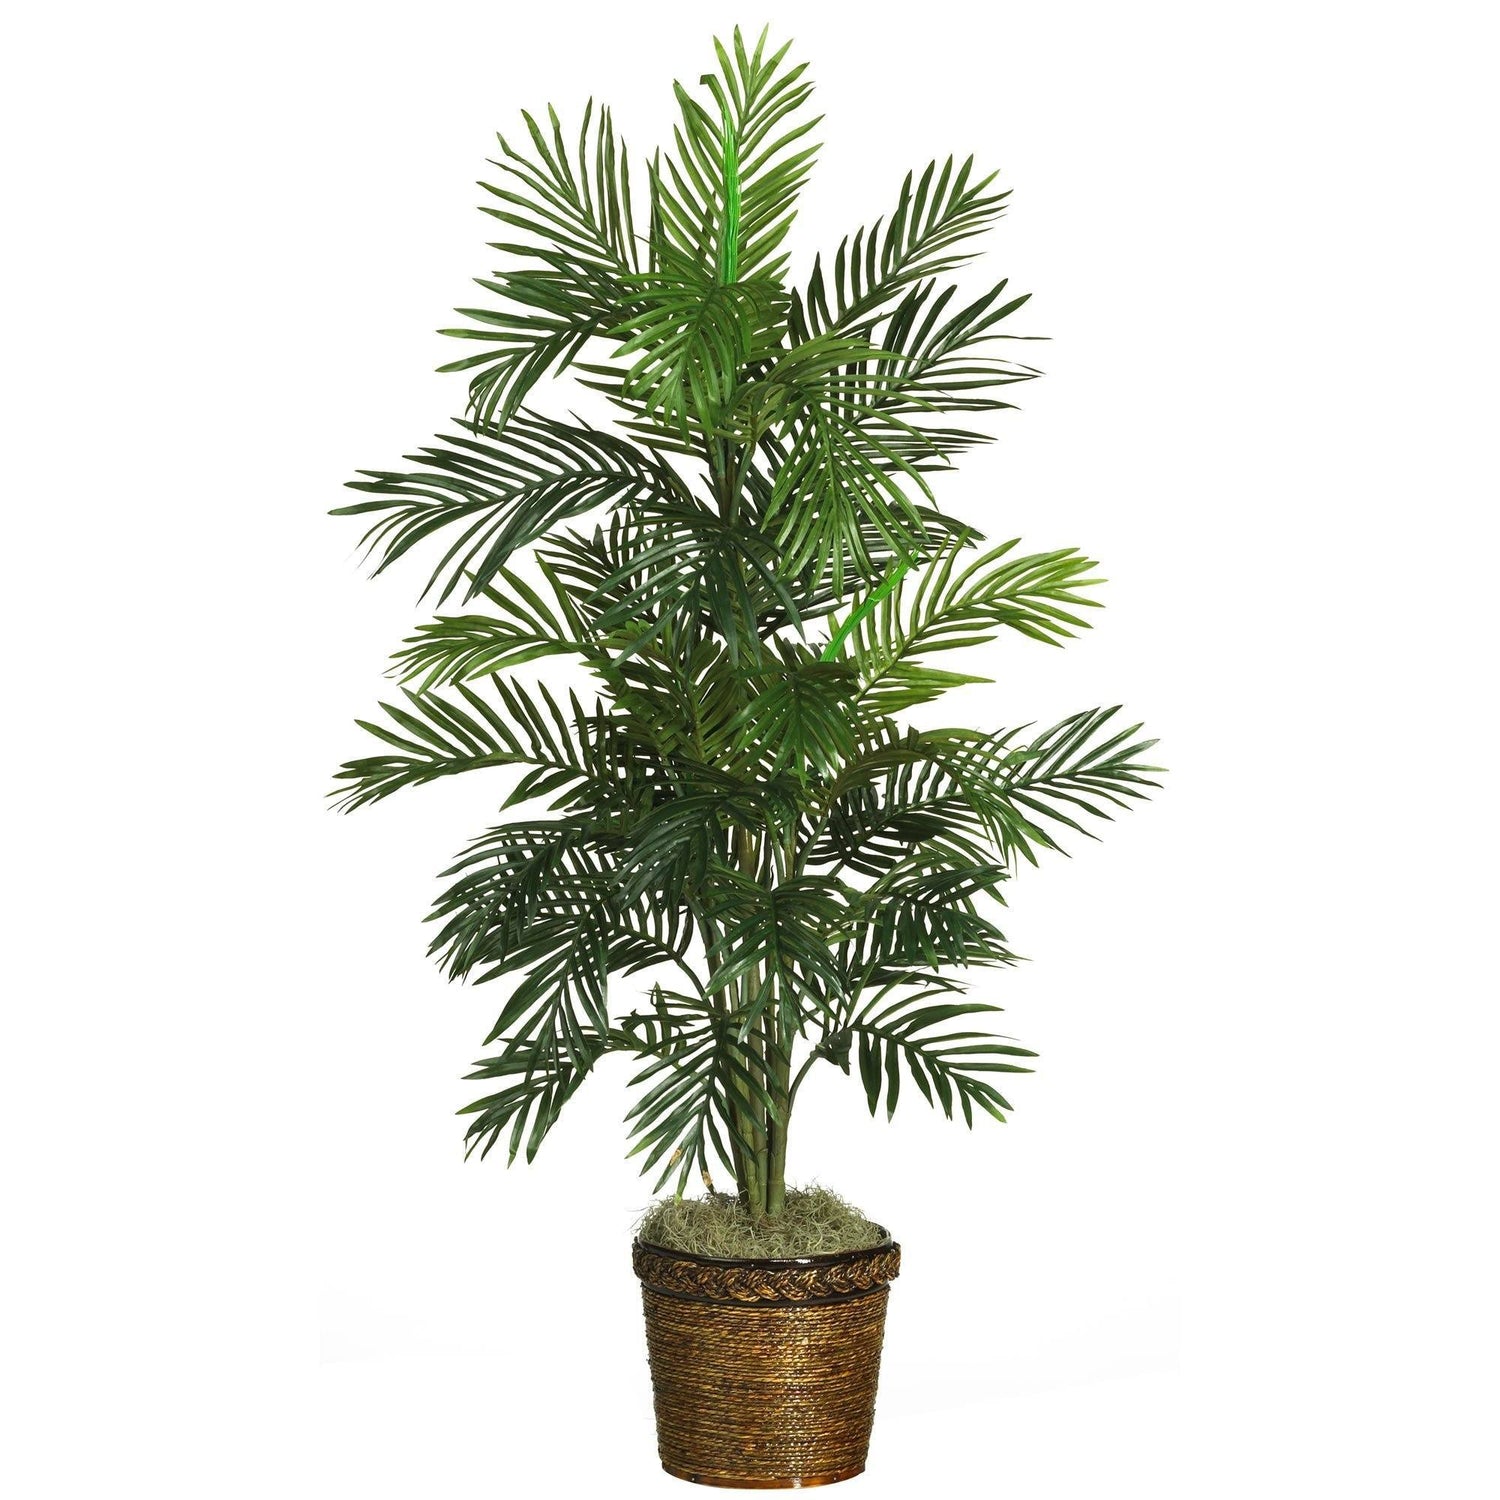 56" Areca Palm Silk Tree with Wicker Basket